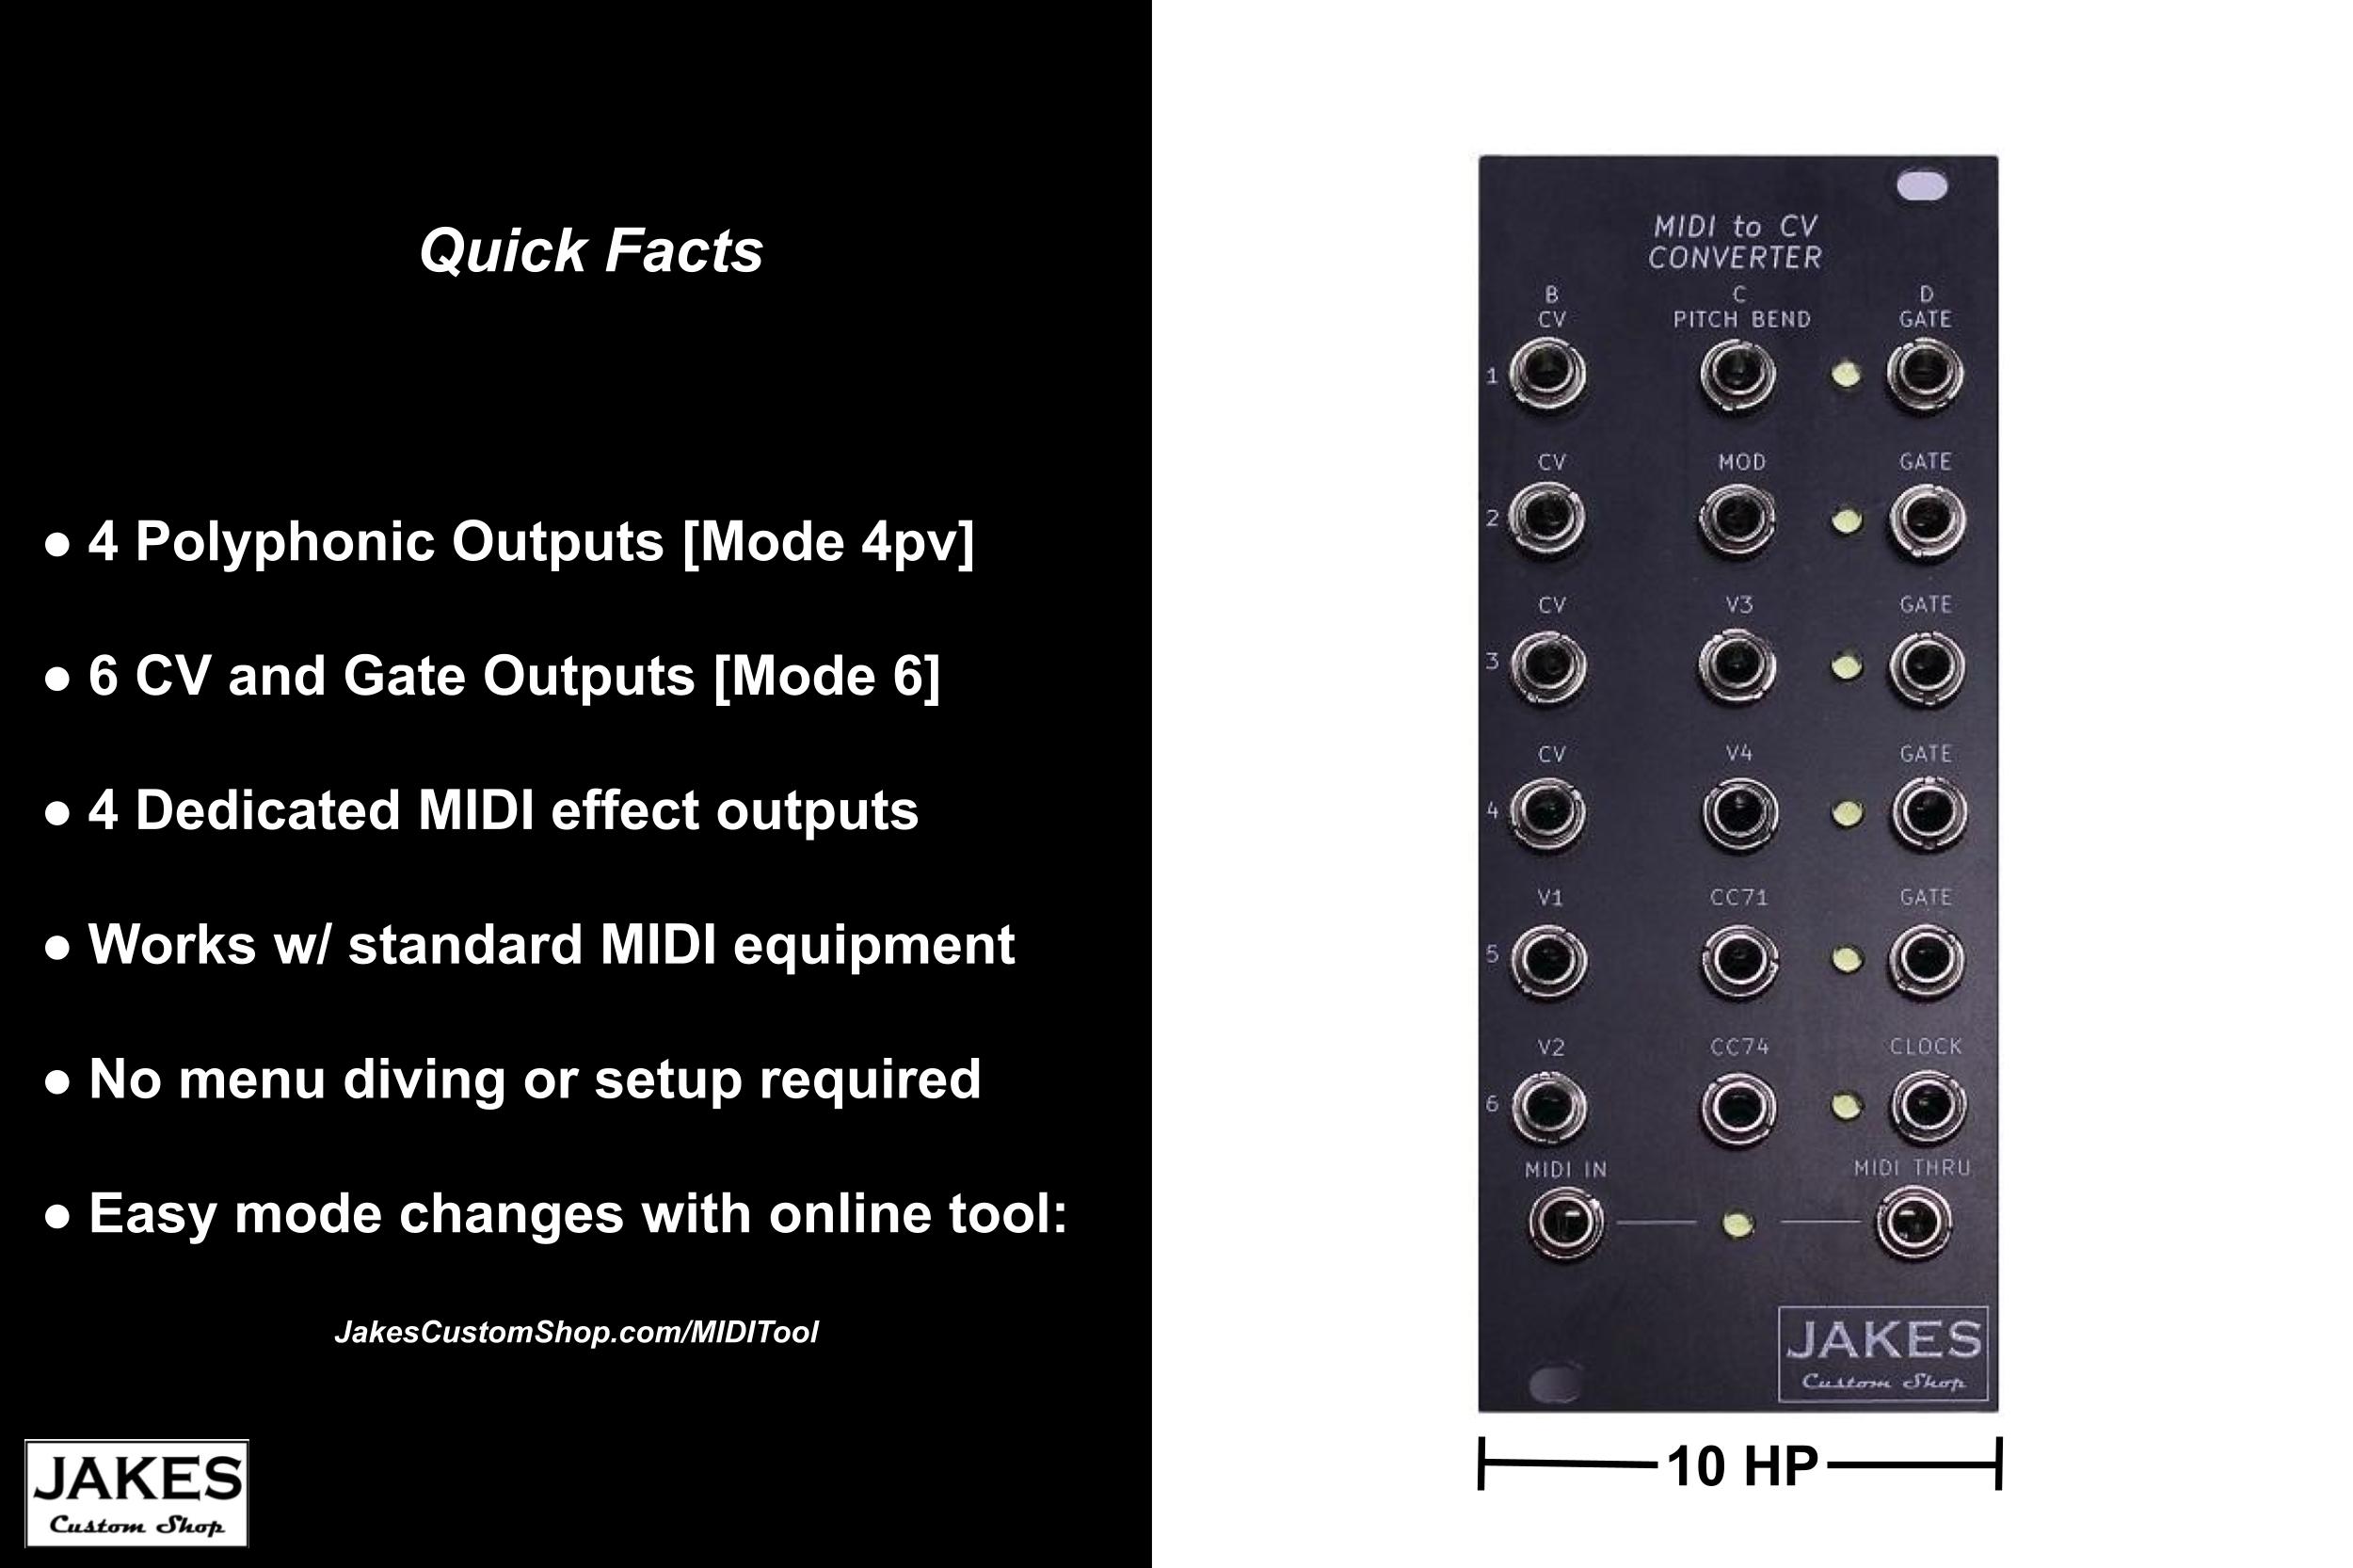 MIDI to CV Module Mode 4PV